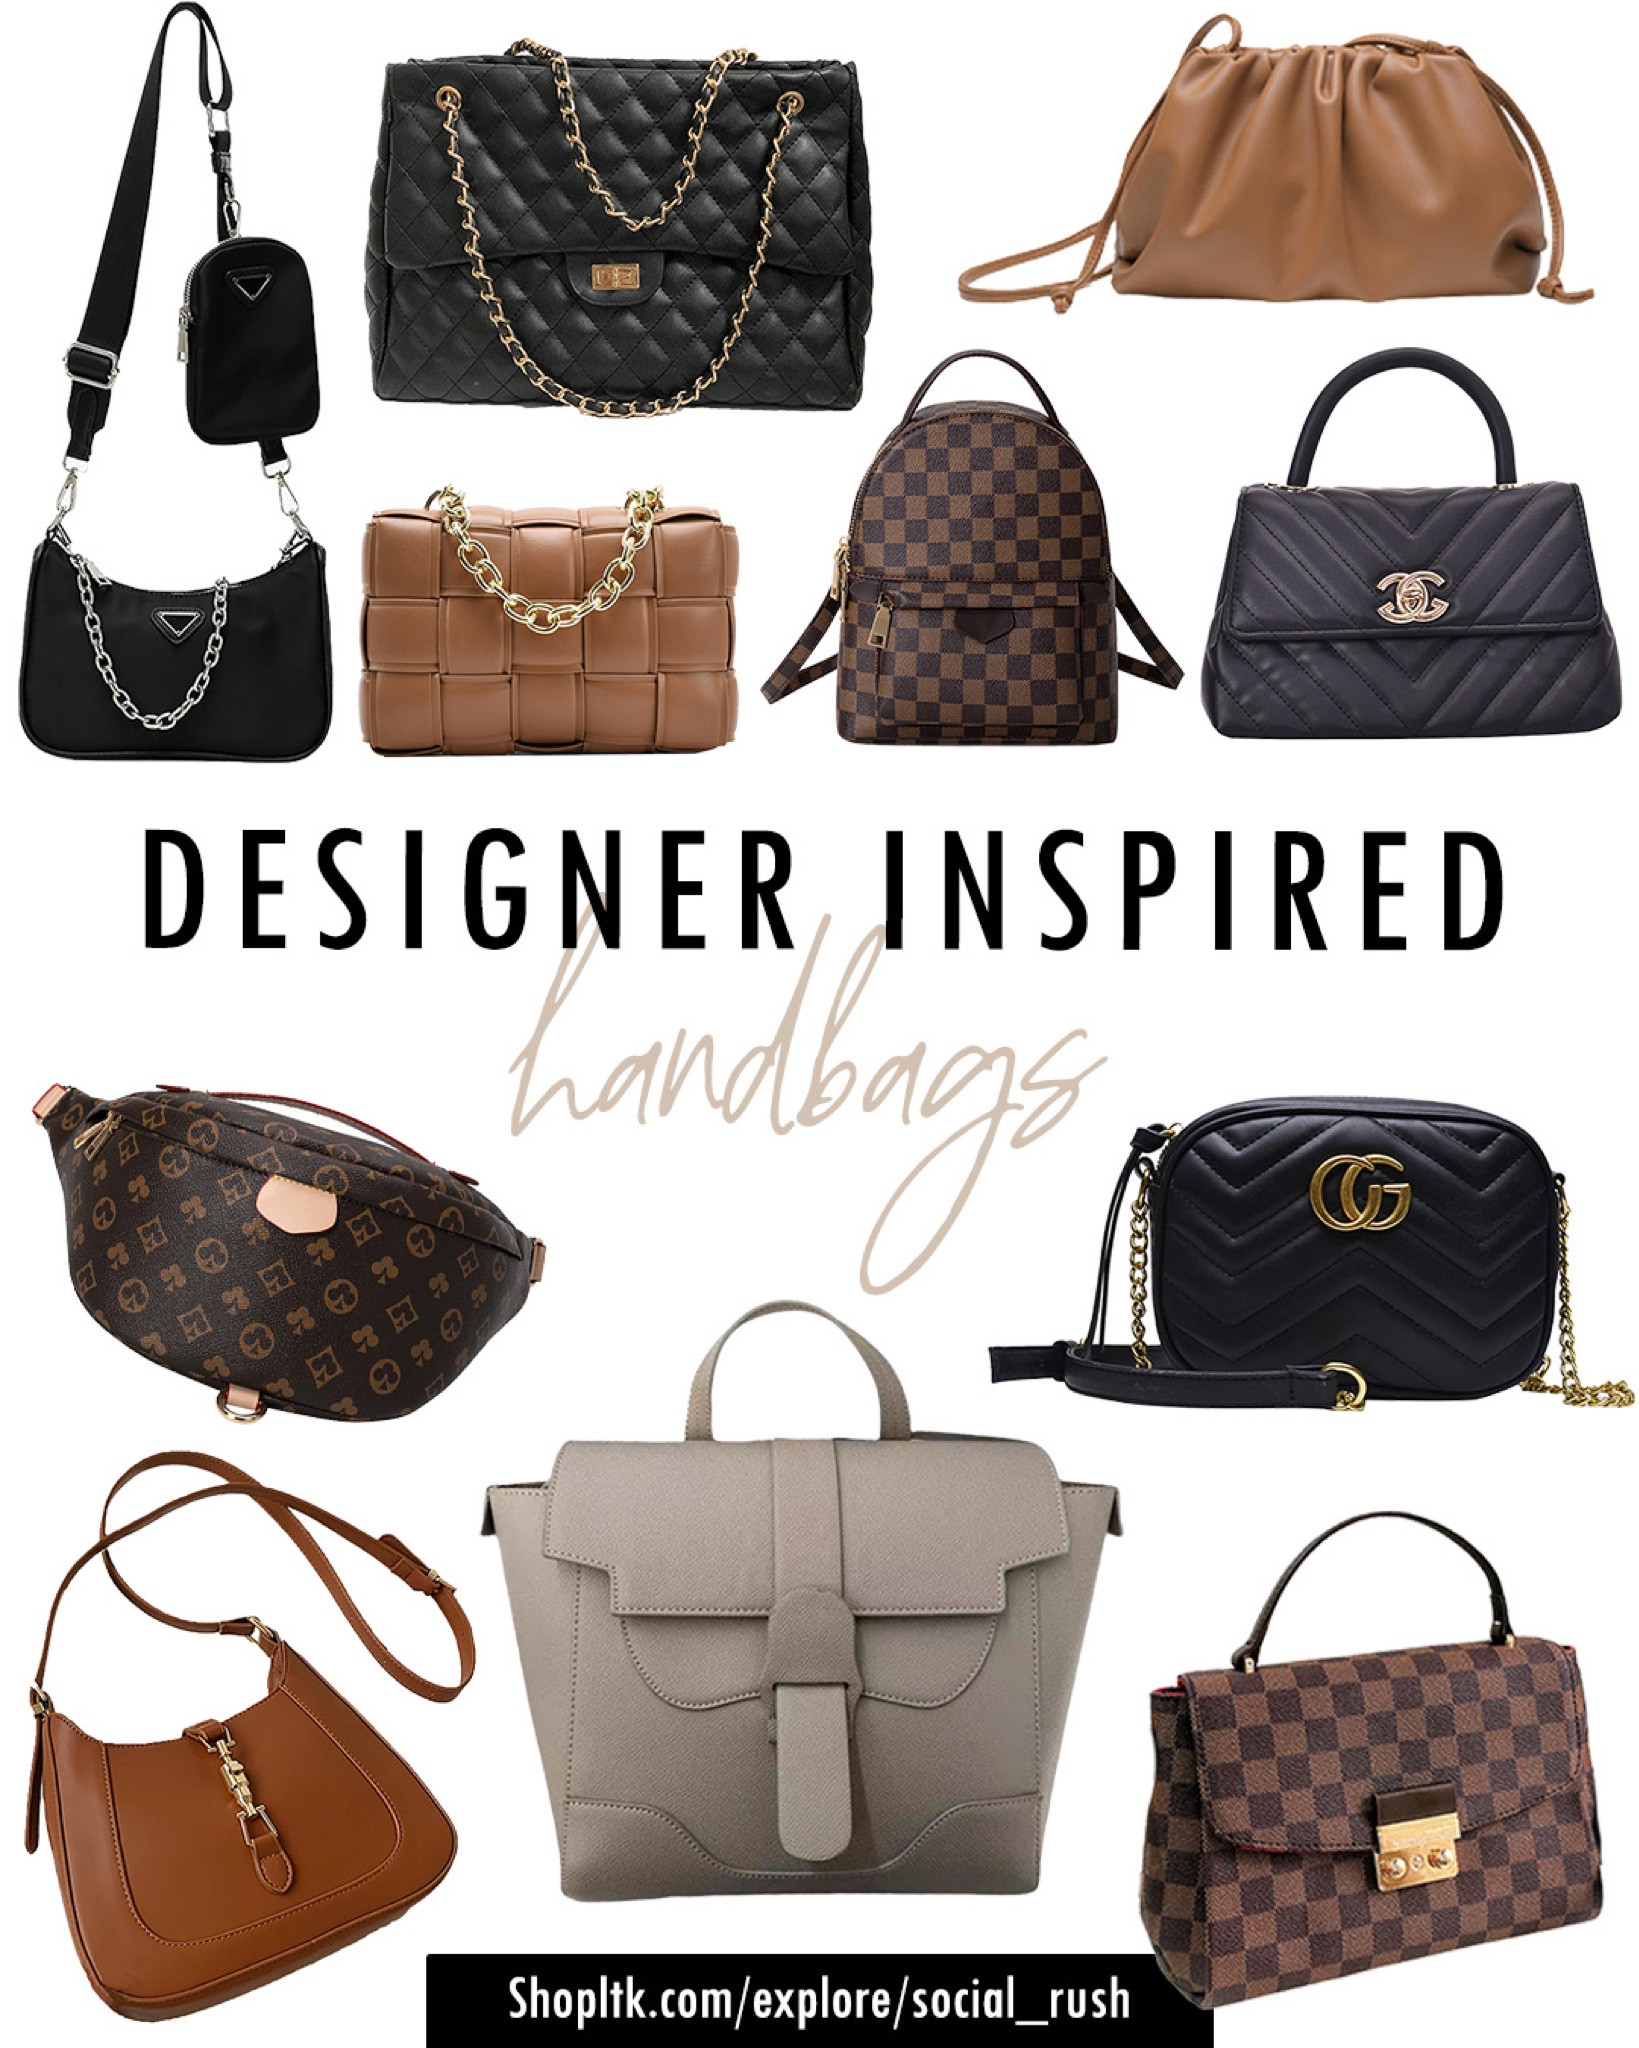 5 of the best designer bag dupes